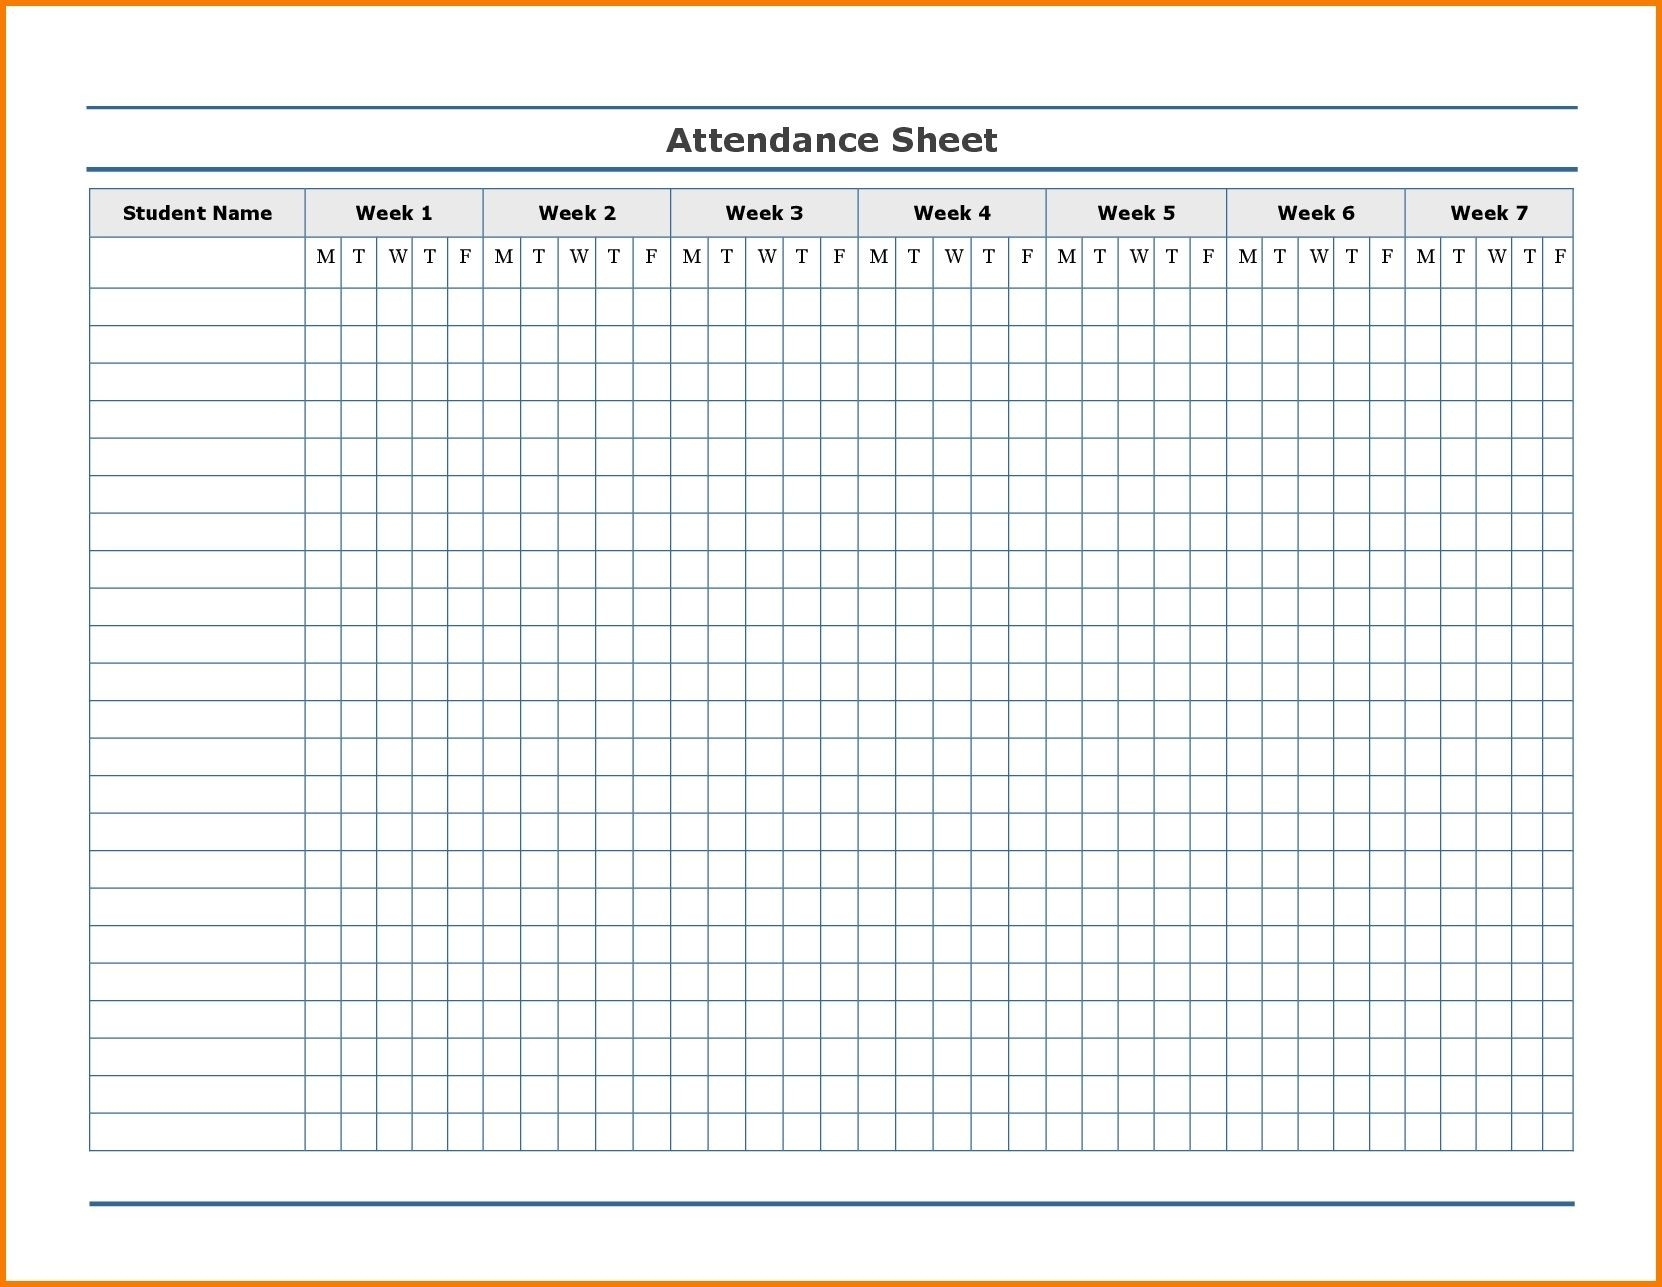 Free Employee Attendance Calendar | Employee Tracker-2020 Printable Employee Attendance Calendar Template